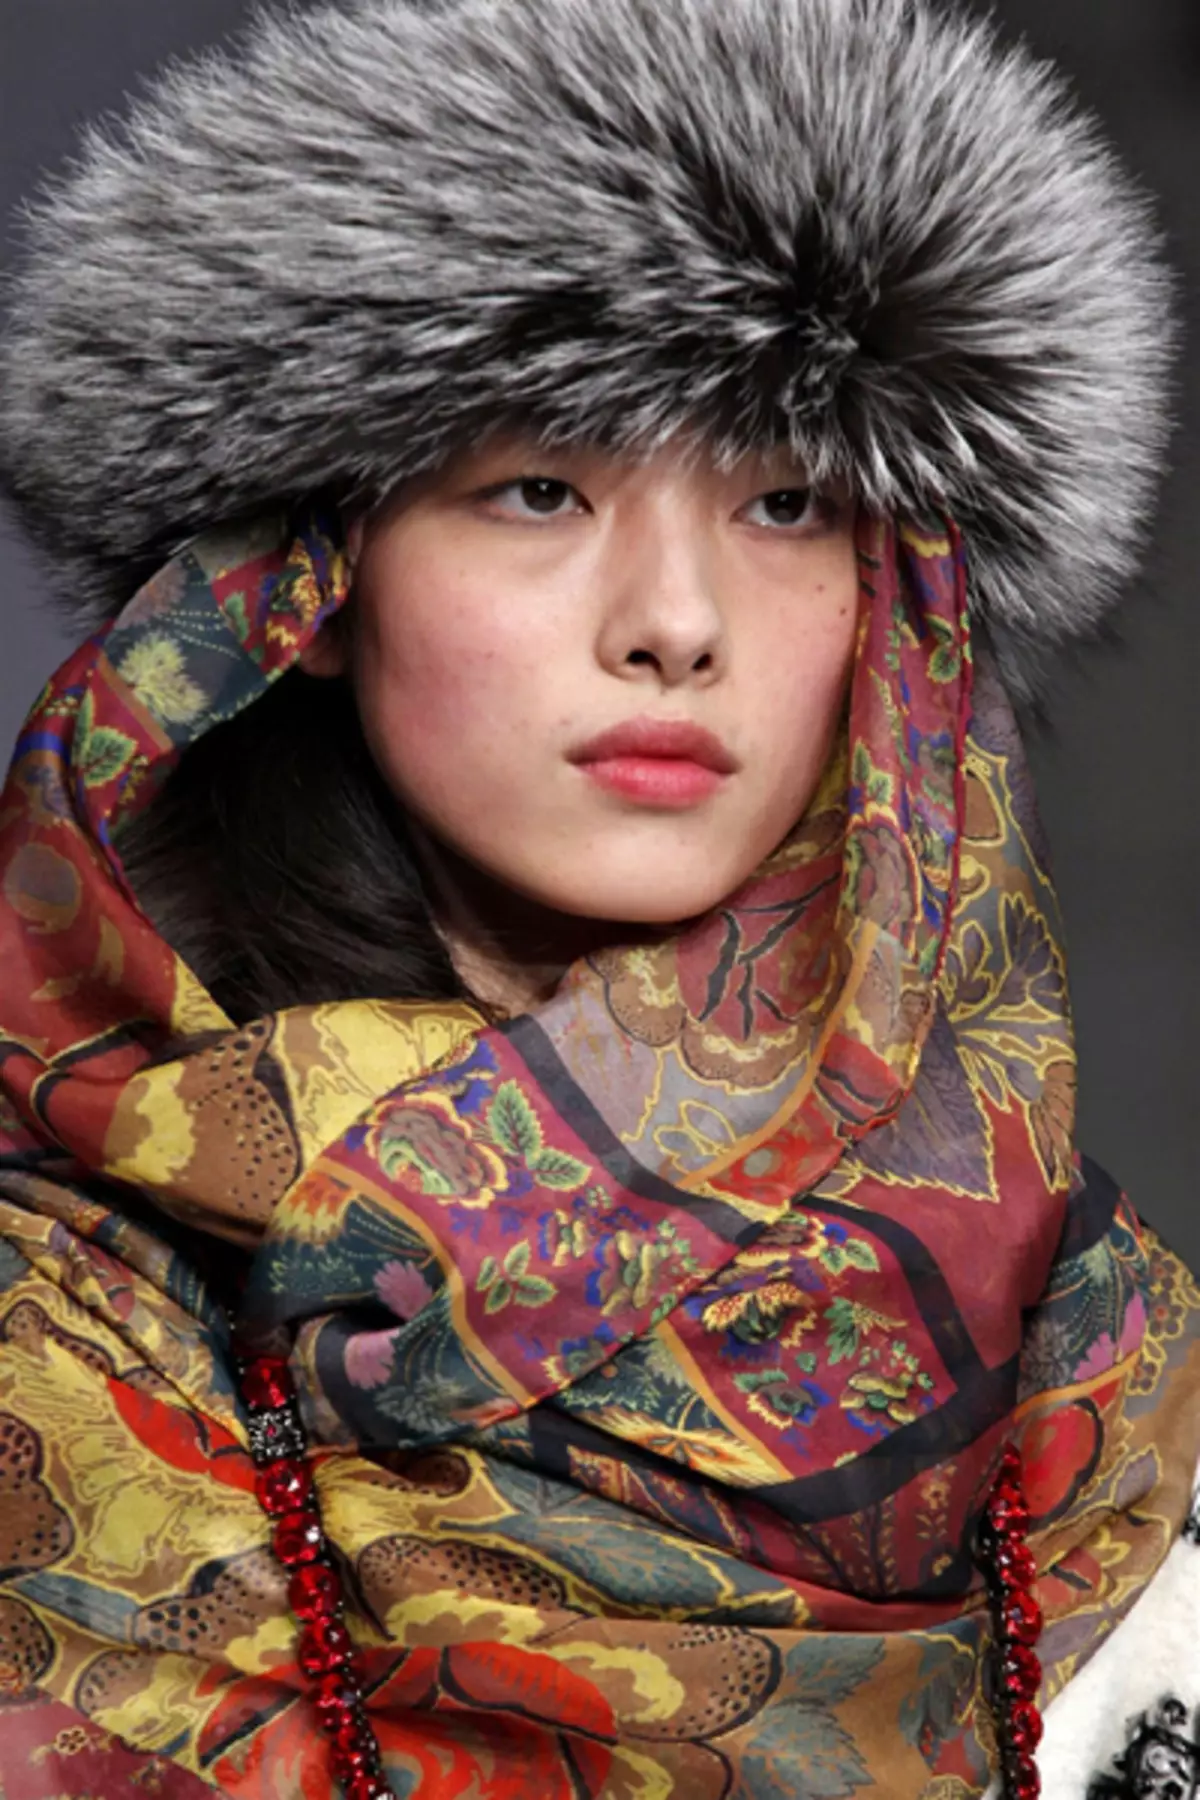 Kazakh National Costume (Hoto 68): Mata Cosstume Kazakhs, jama'a 842_60